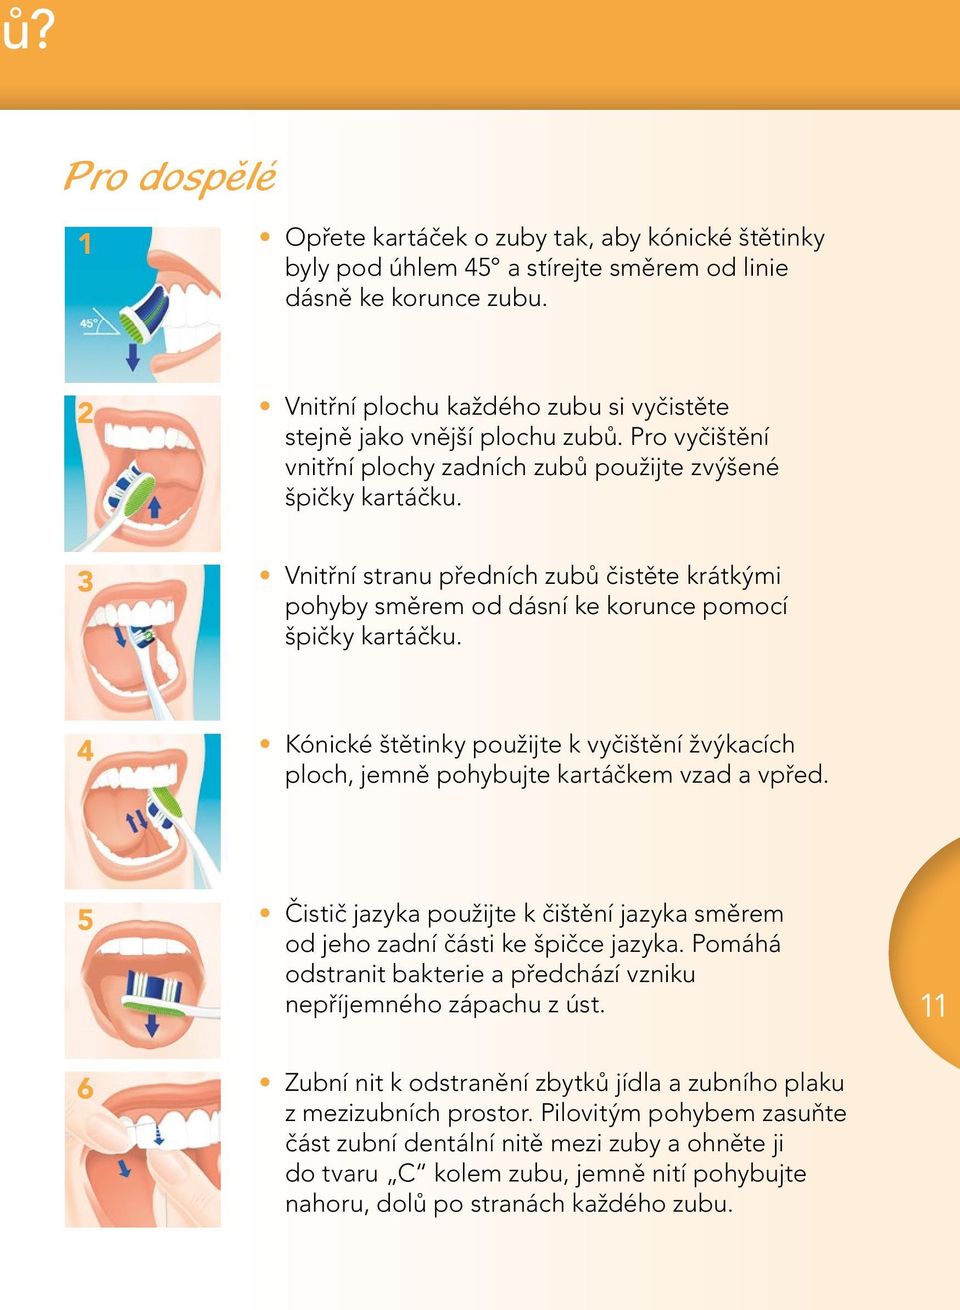 3 Vnitřní stranu předních zubů čistěte krátkými pohyby směrem od dásní ke korunce pomocí špičky kartáčku.